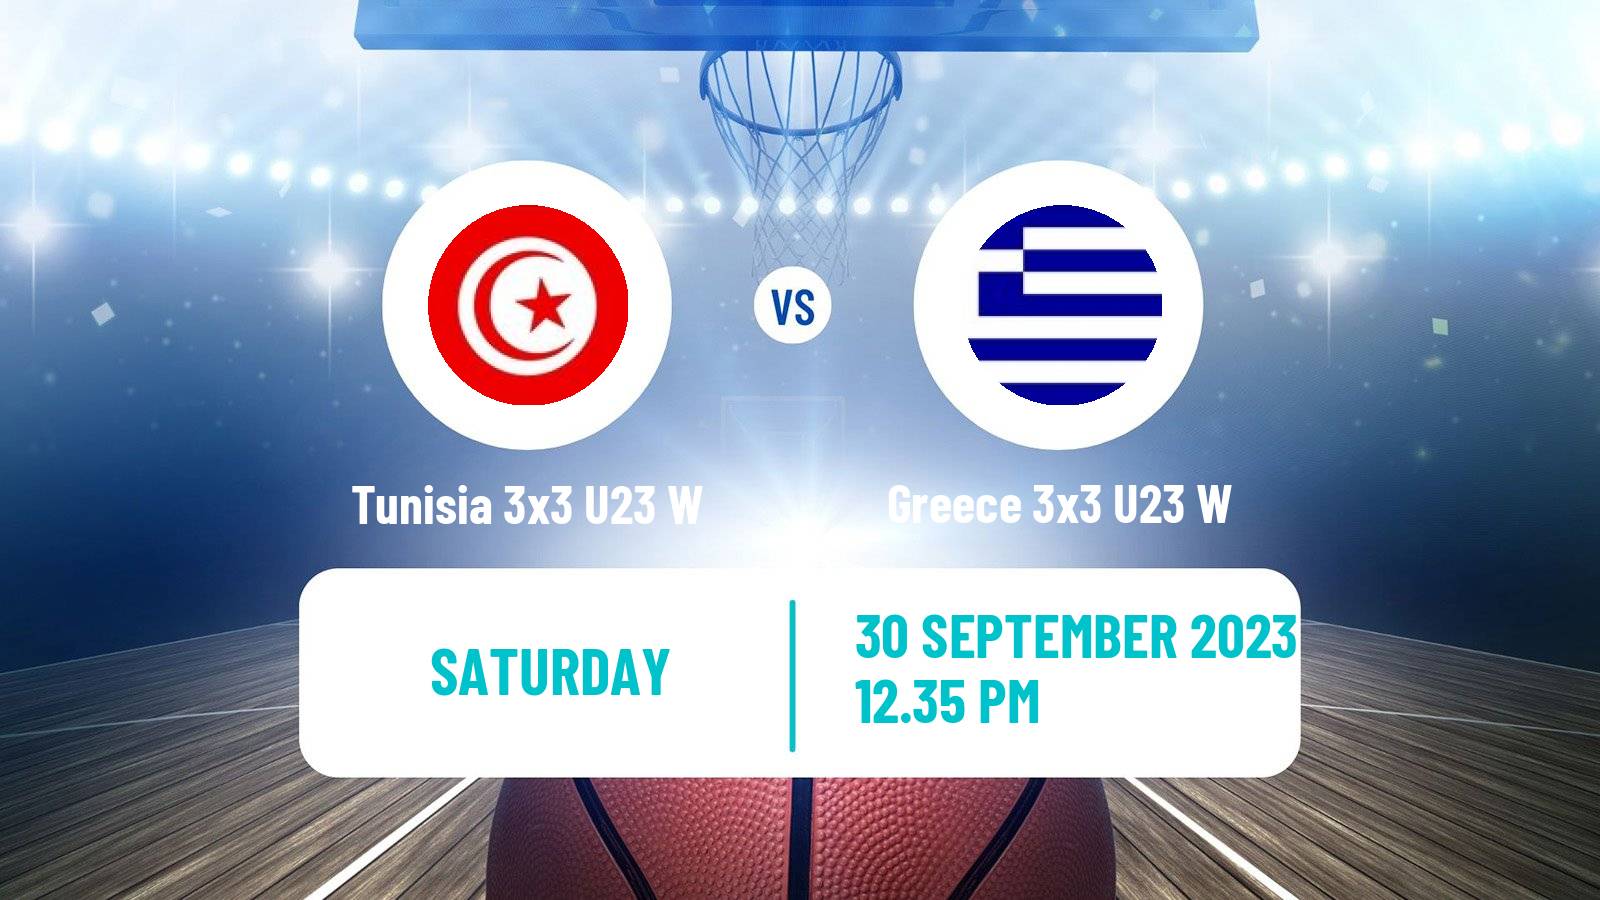 Basketball World Cup Basketball 3x3 U23 Women Tunisia 3x3 U23 W - Greece 3x3 U23 W